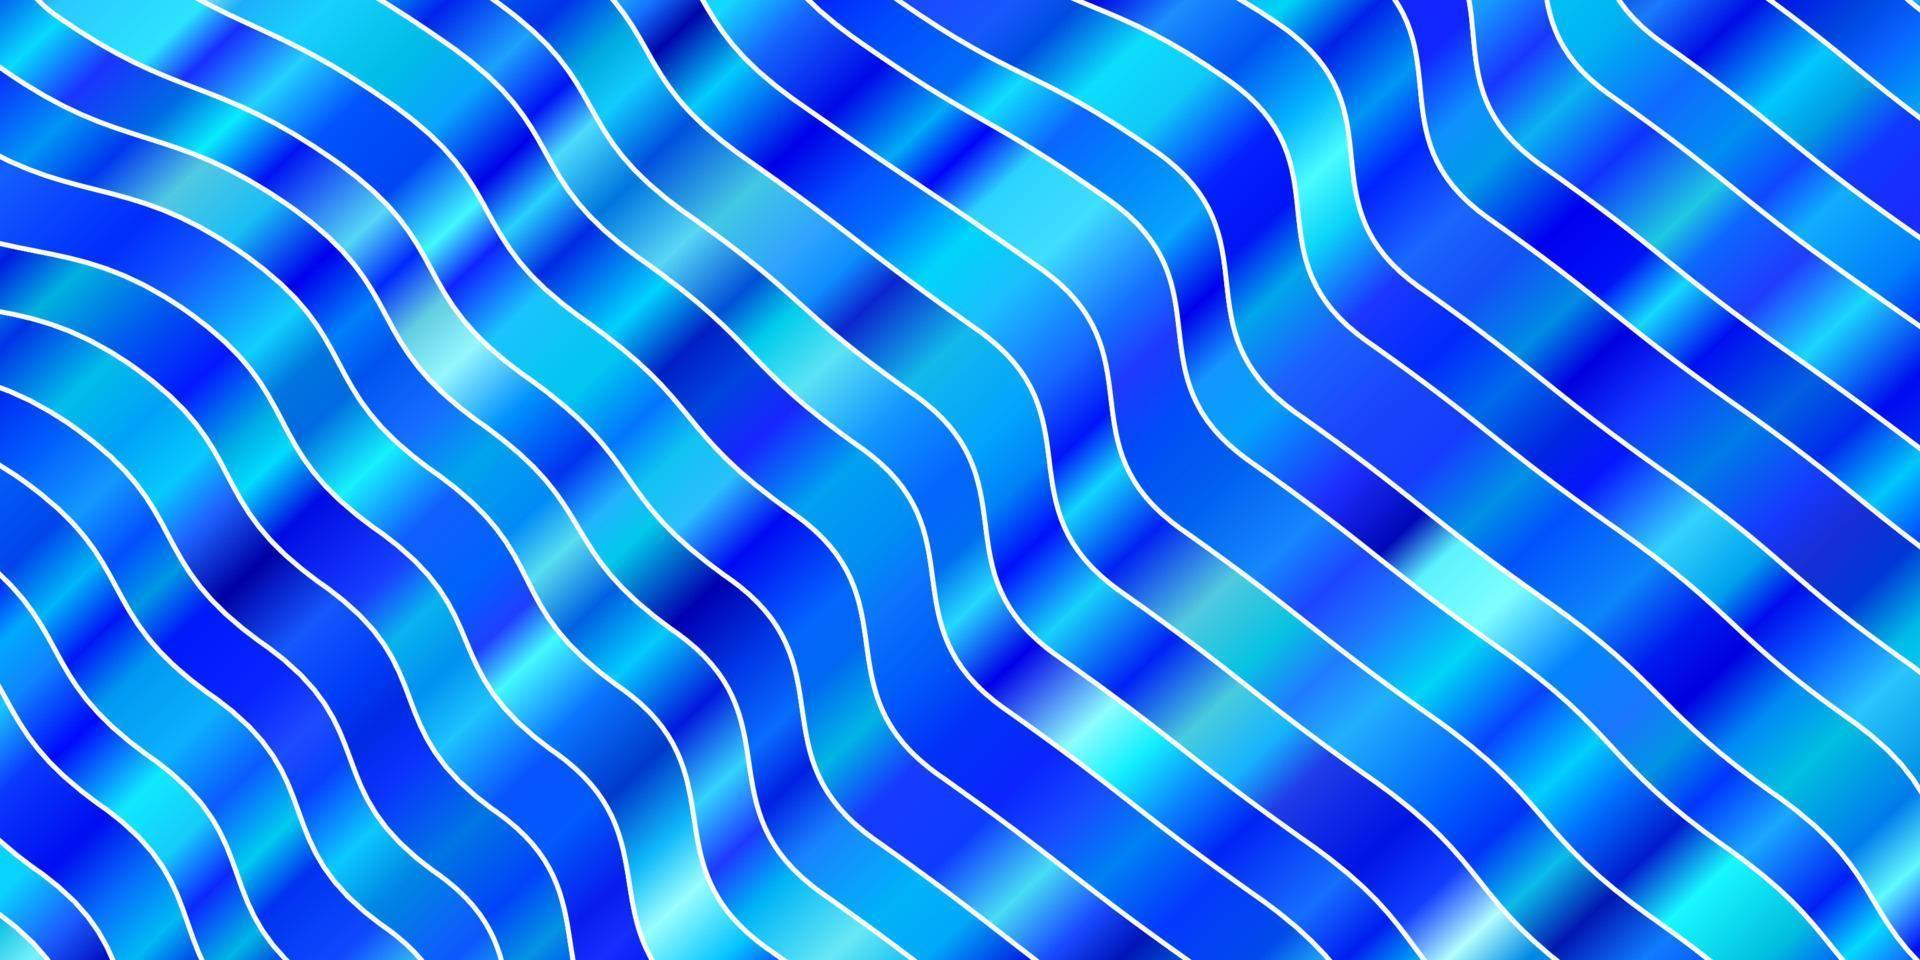 padrão de vetor azul claro com linhas curvas.